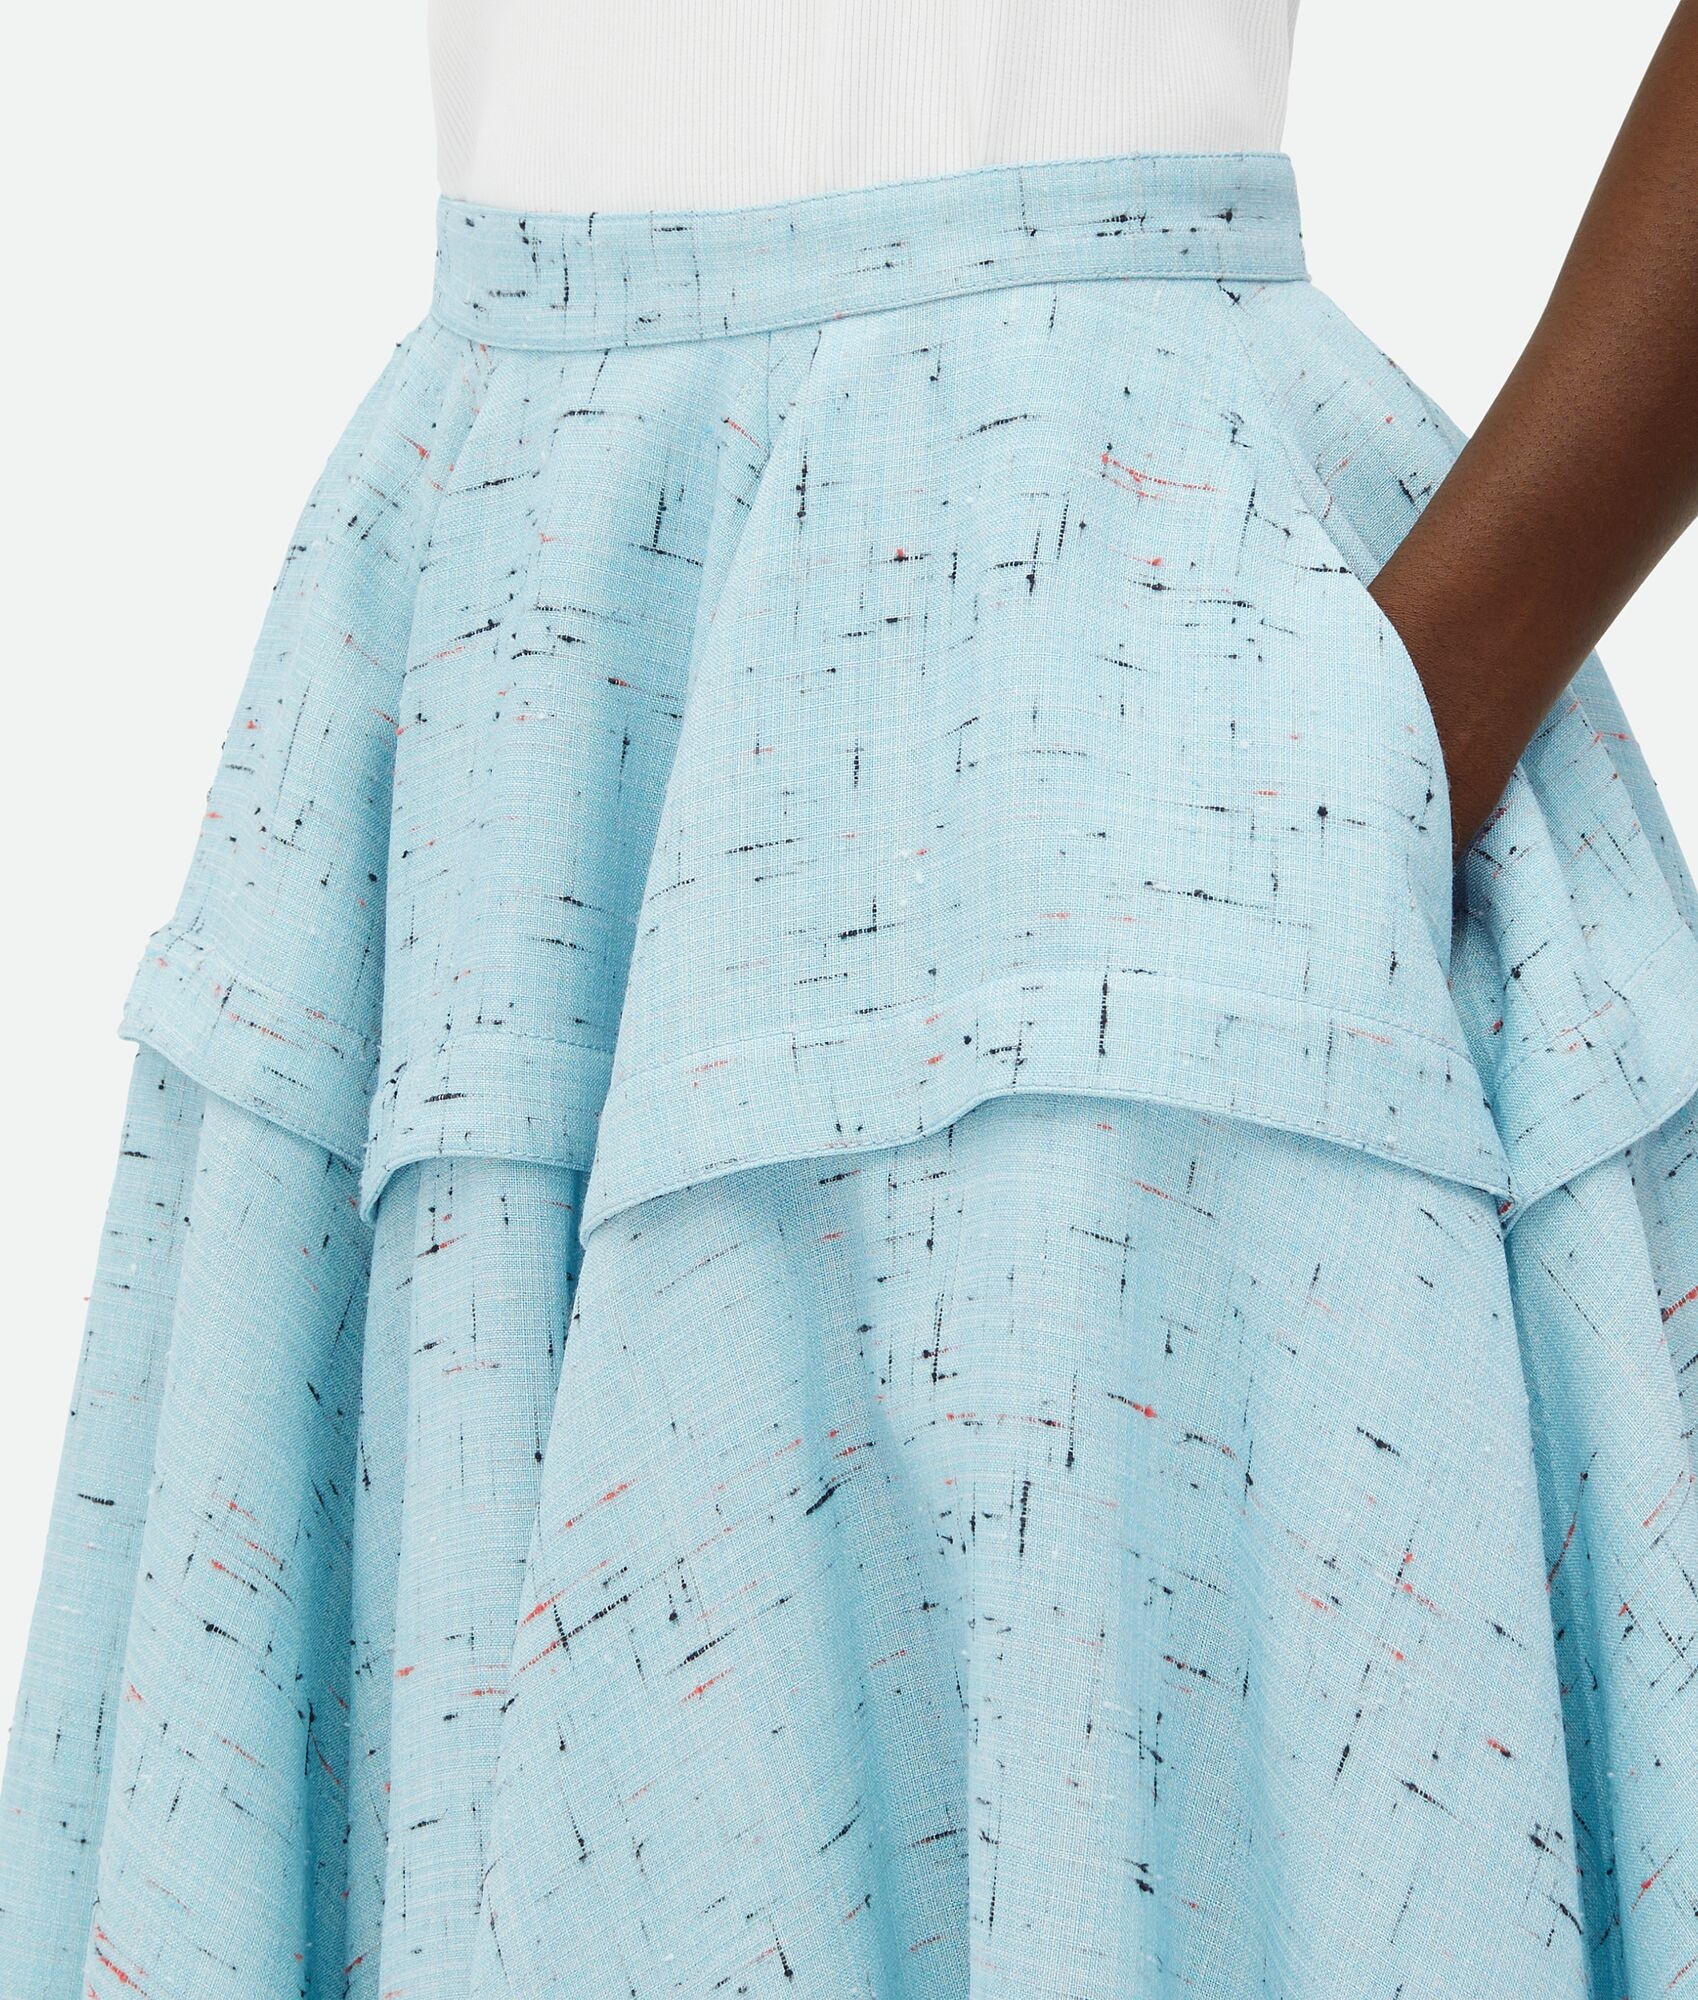 Textured Criss-Cross Viscose Silk Skirt - 5